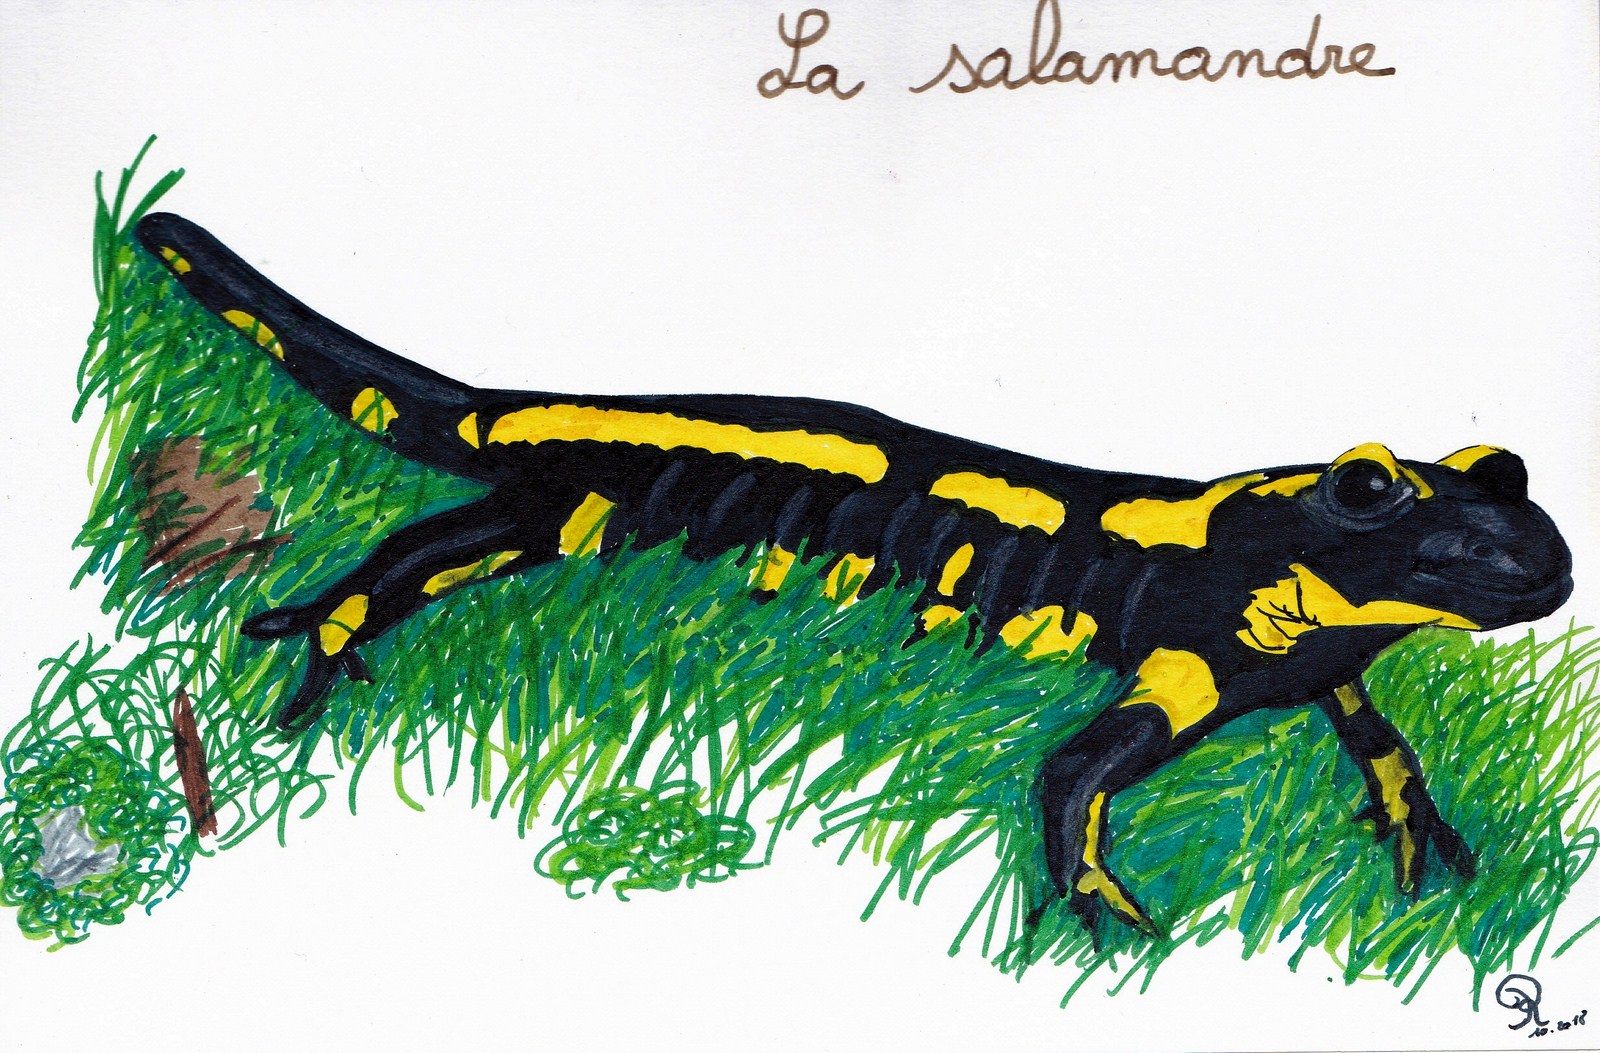 Salamandre feutre contraste haut et teinte graduee au maxi photoscape copier